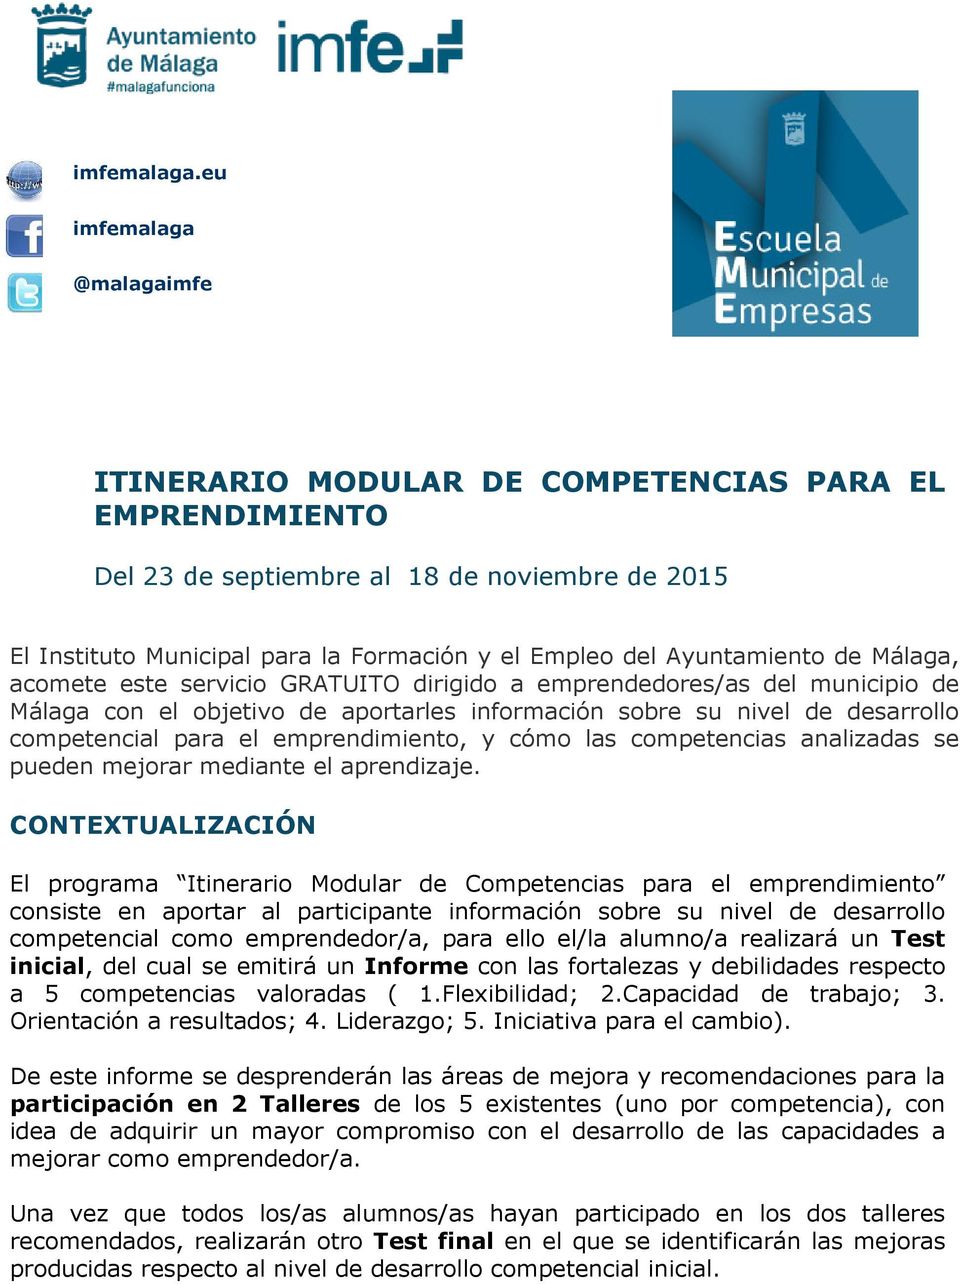 Ayuntamiento de Málaga, acomete este servicio GRATUITO dirigido a emprendedores/as del municipio de Málaga con el objetivo de aportarles información sobre su nivel de desarrollo competencial para el